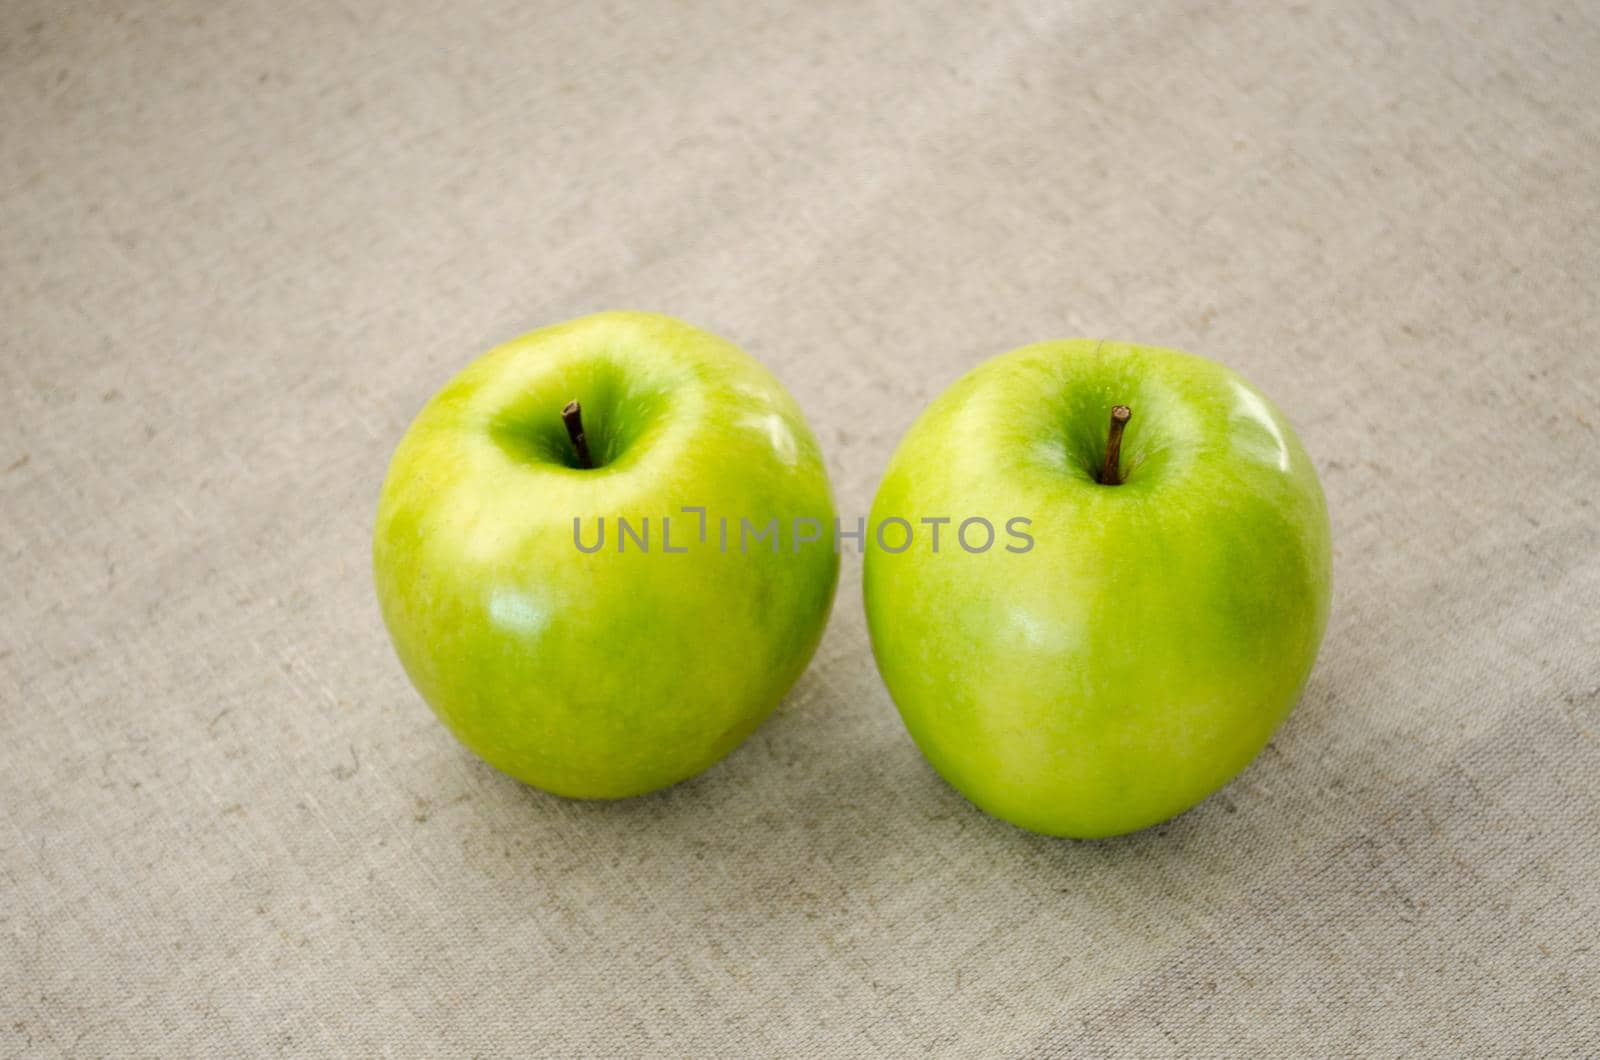 Two green Apple. Ripe sweet apples.